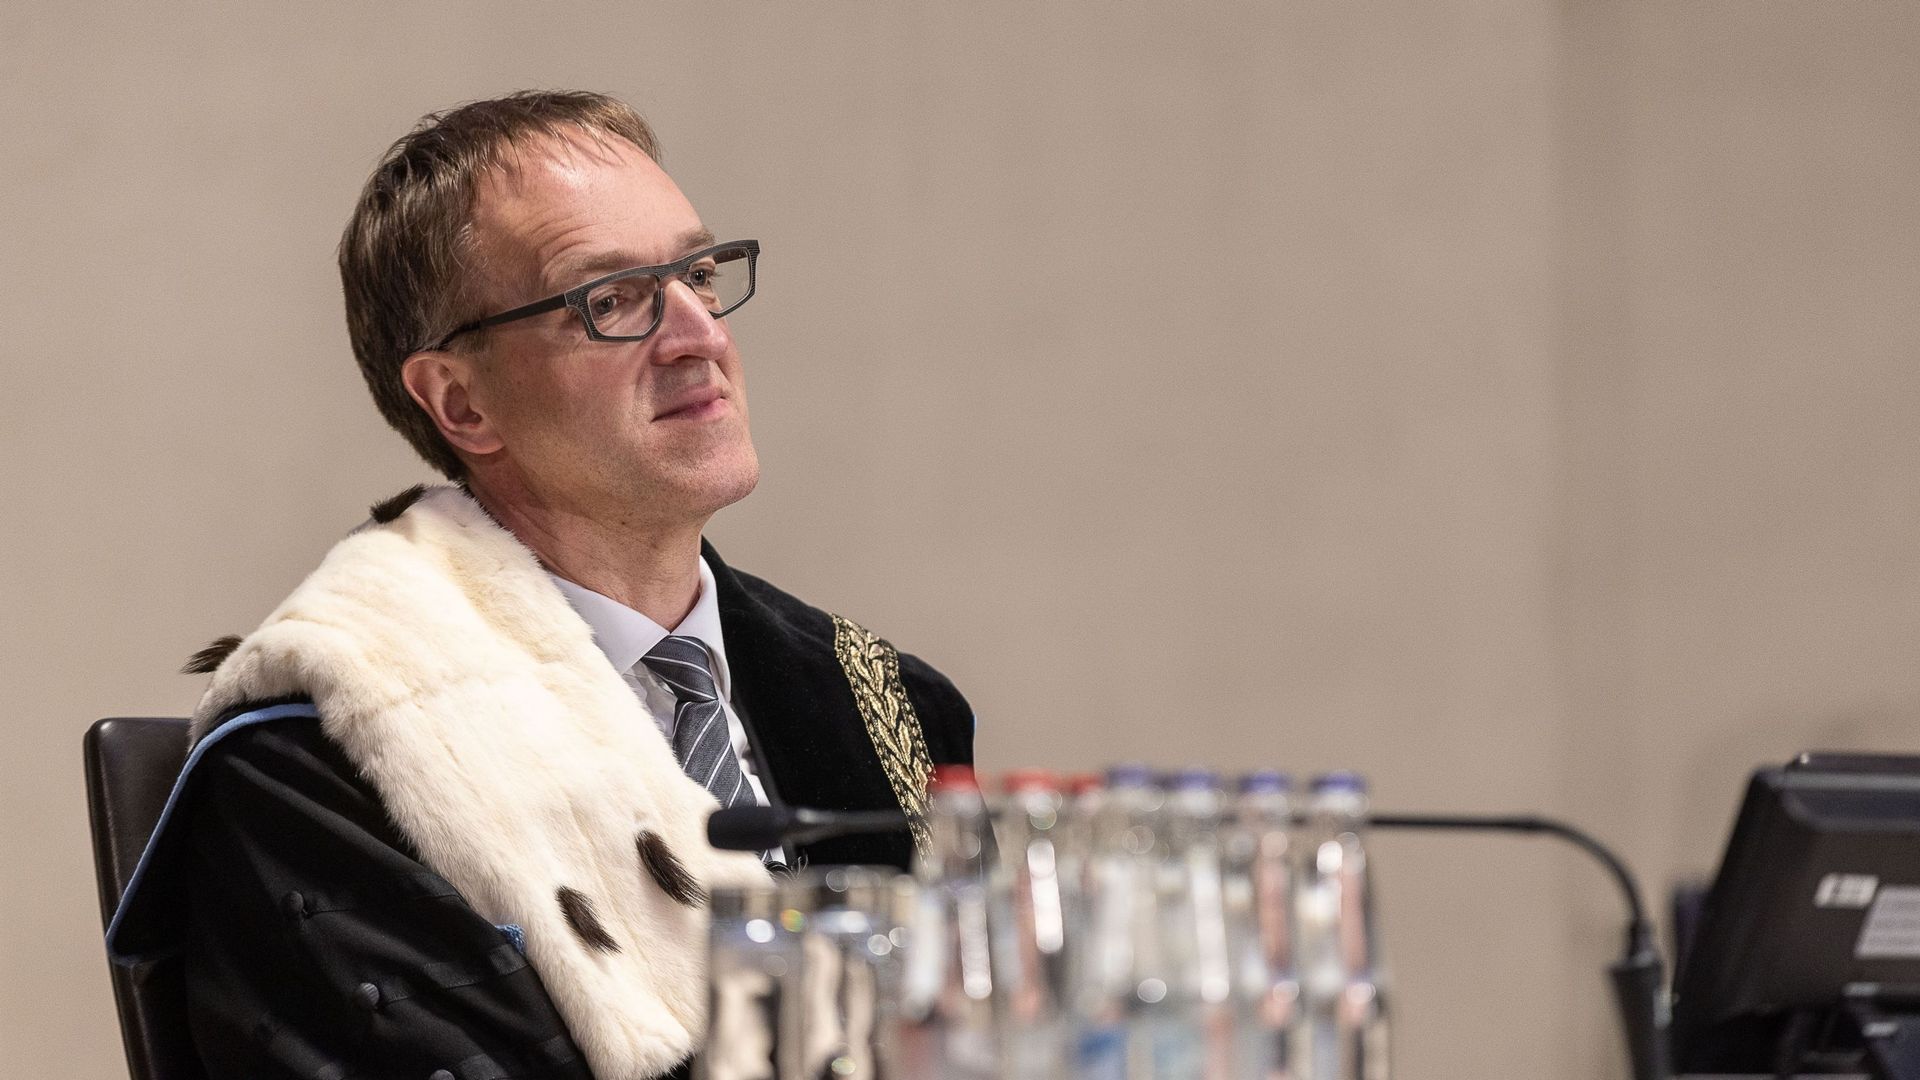 Le recteur de l'UGent, Rik Van de Walle, photographié lors de la cérémonie de remise des diplômes de Docteur Honoris Causa de l'université de Gand (UGent), à Gand, vendredi 18 mars 2022.